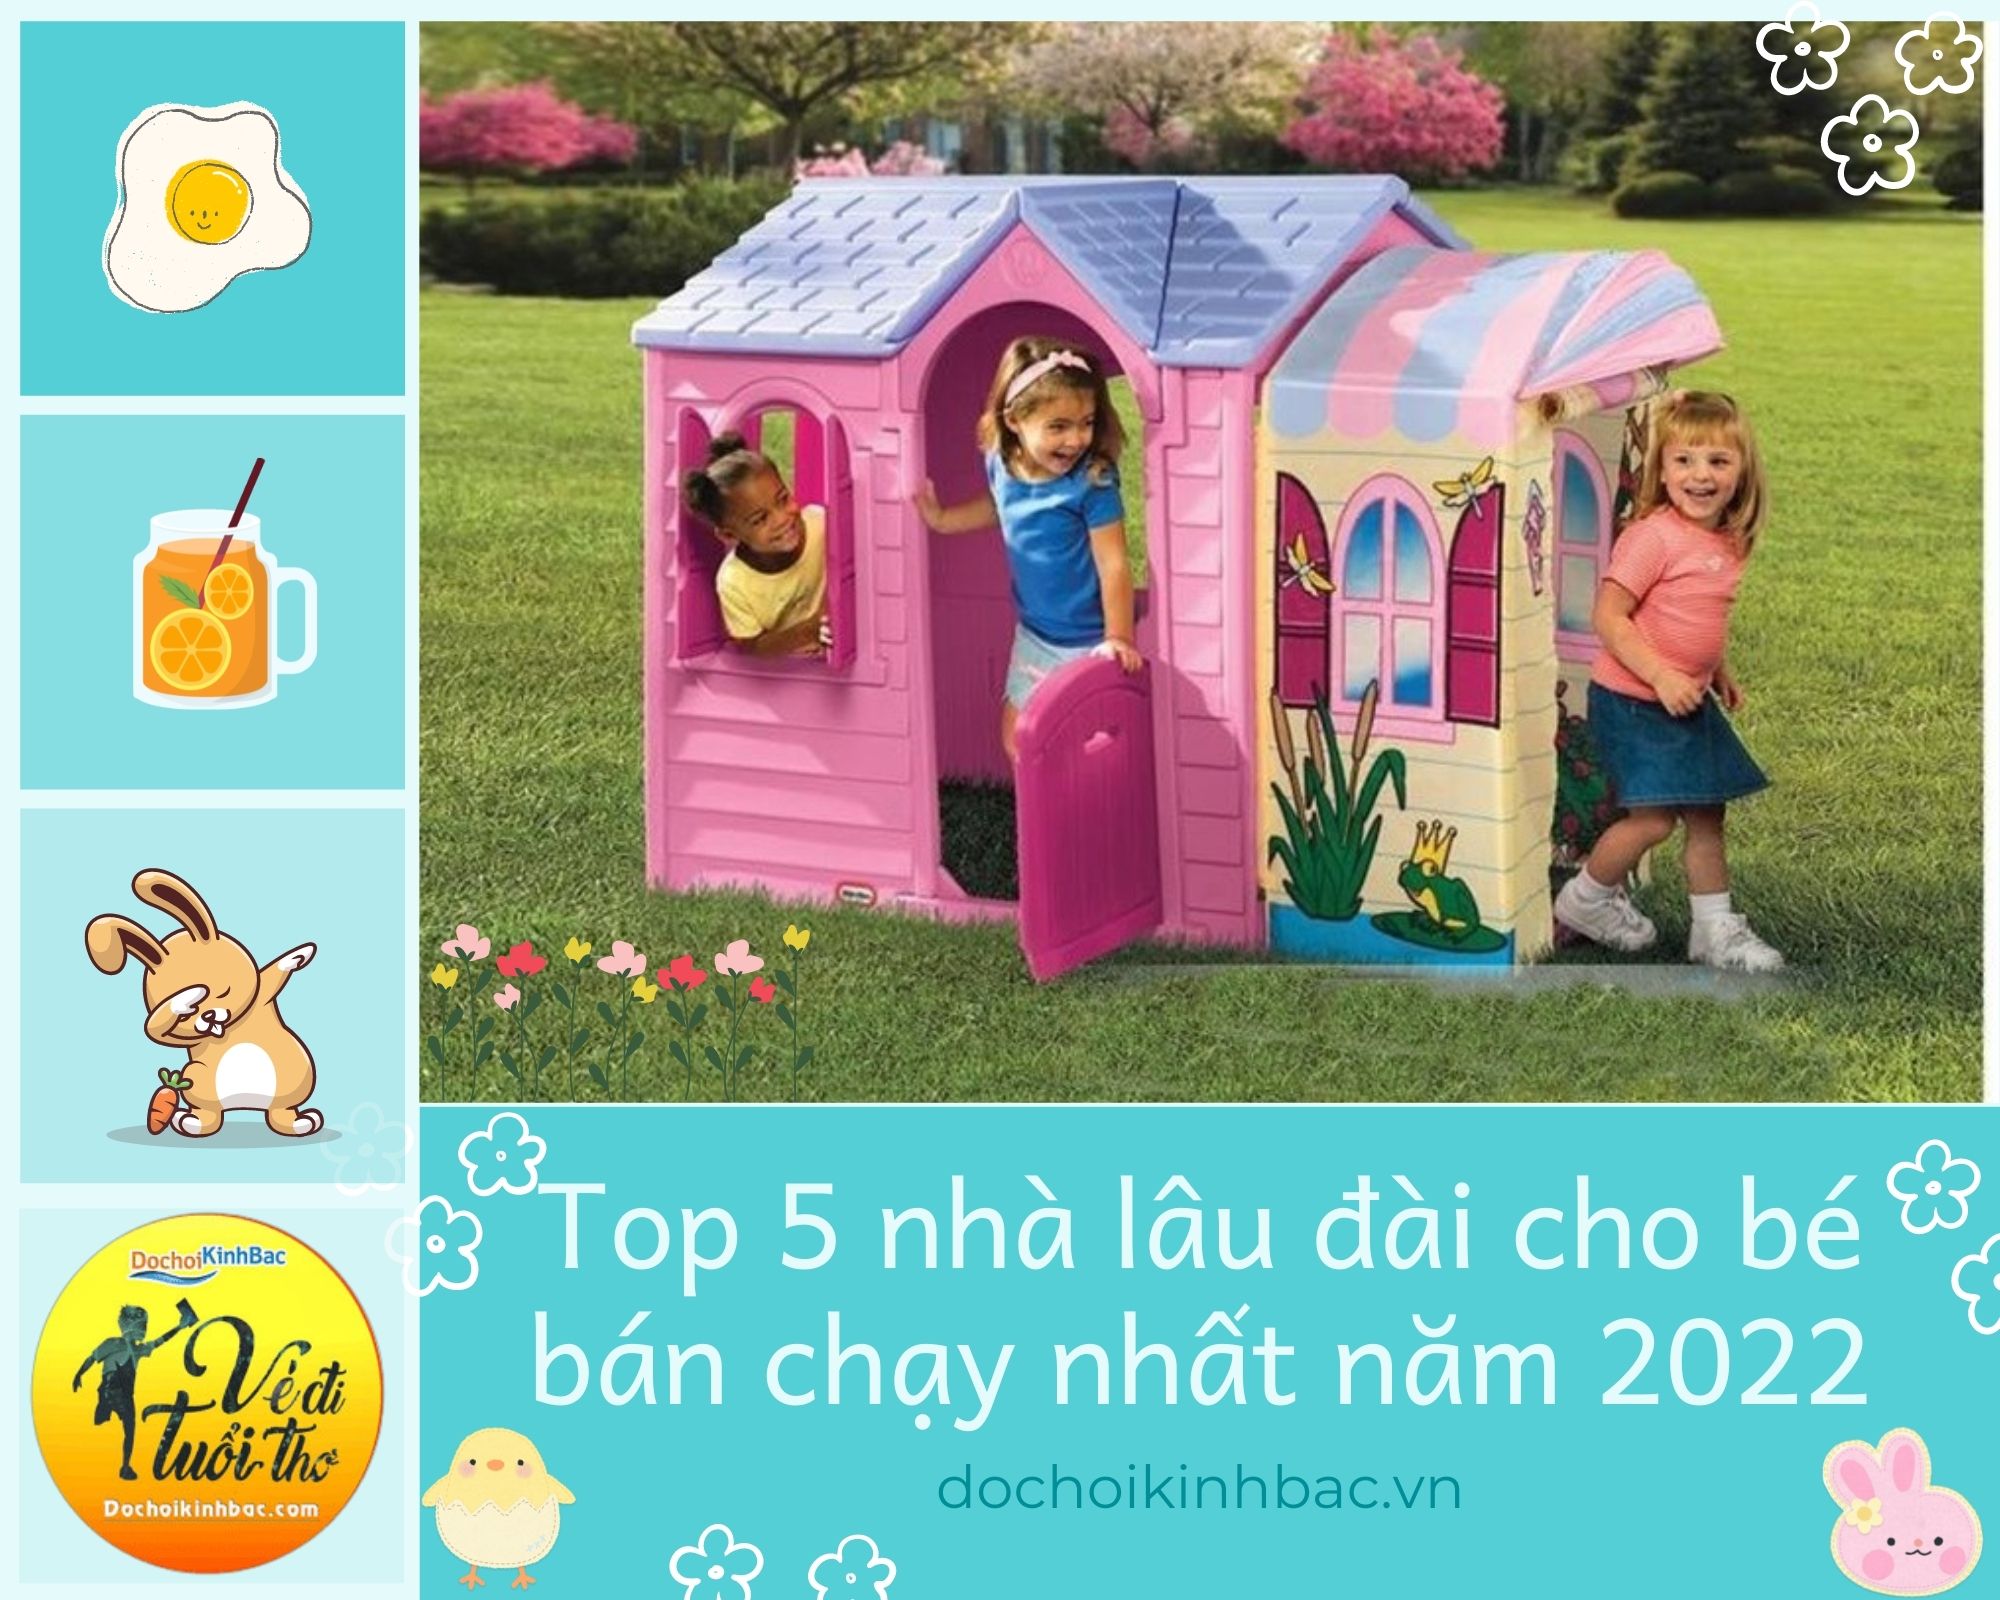 Top 5 nhà lâu đài cho bé bán chạy nhất năm 2022 tại Phố Lu-tỉnh Lào Cai